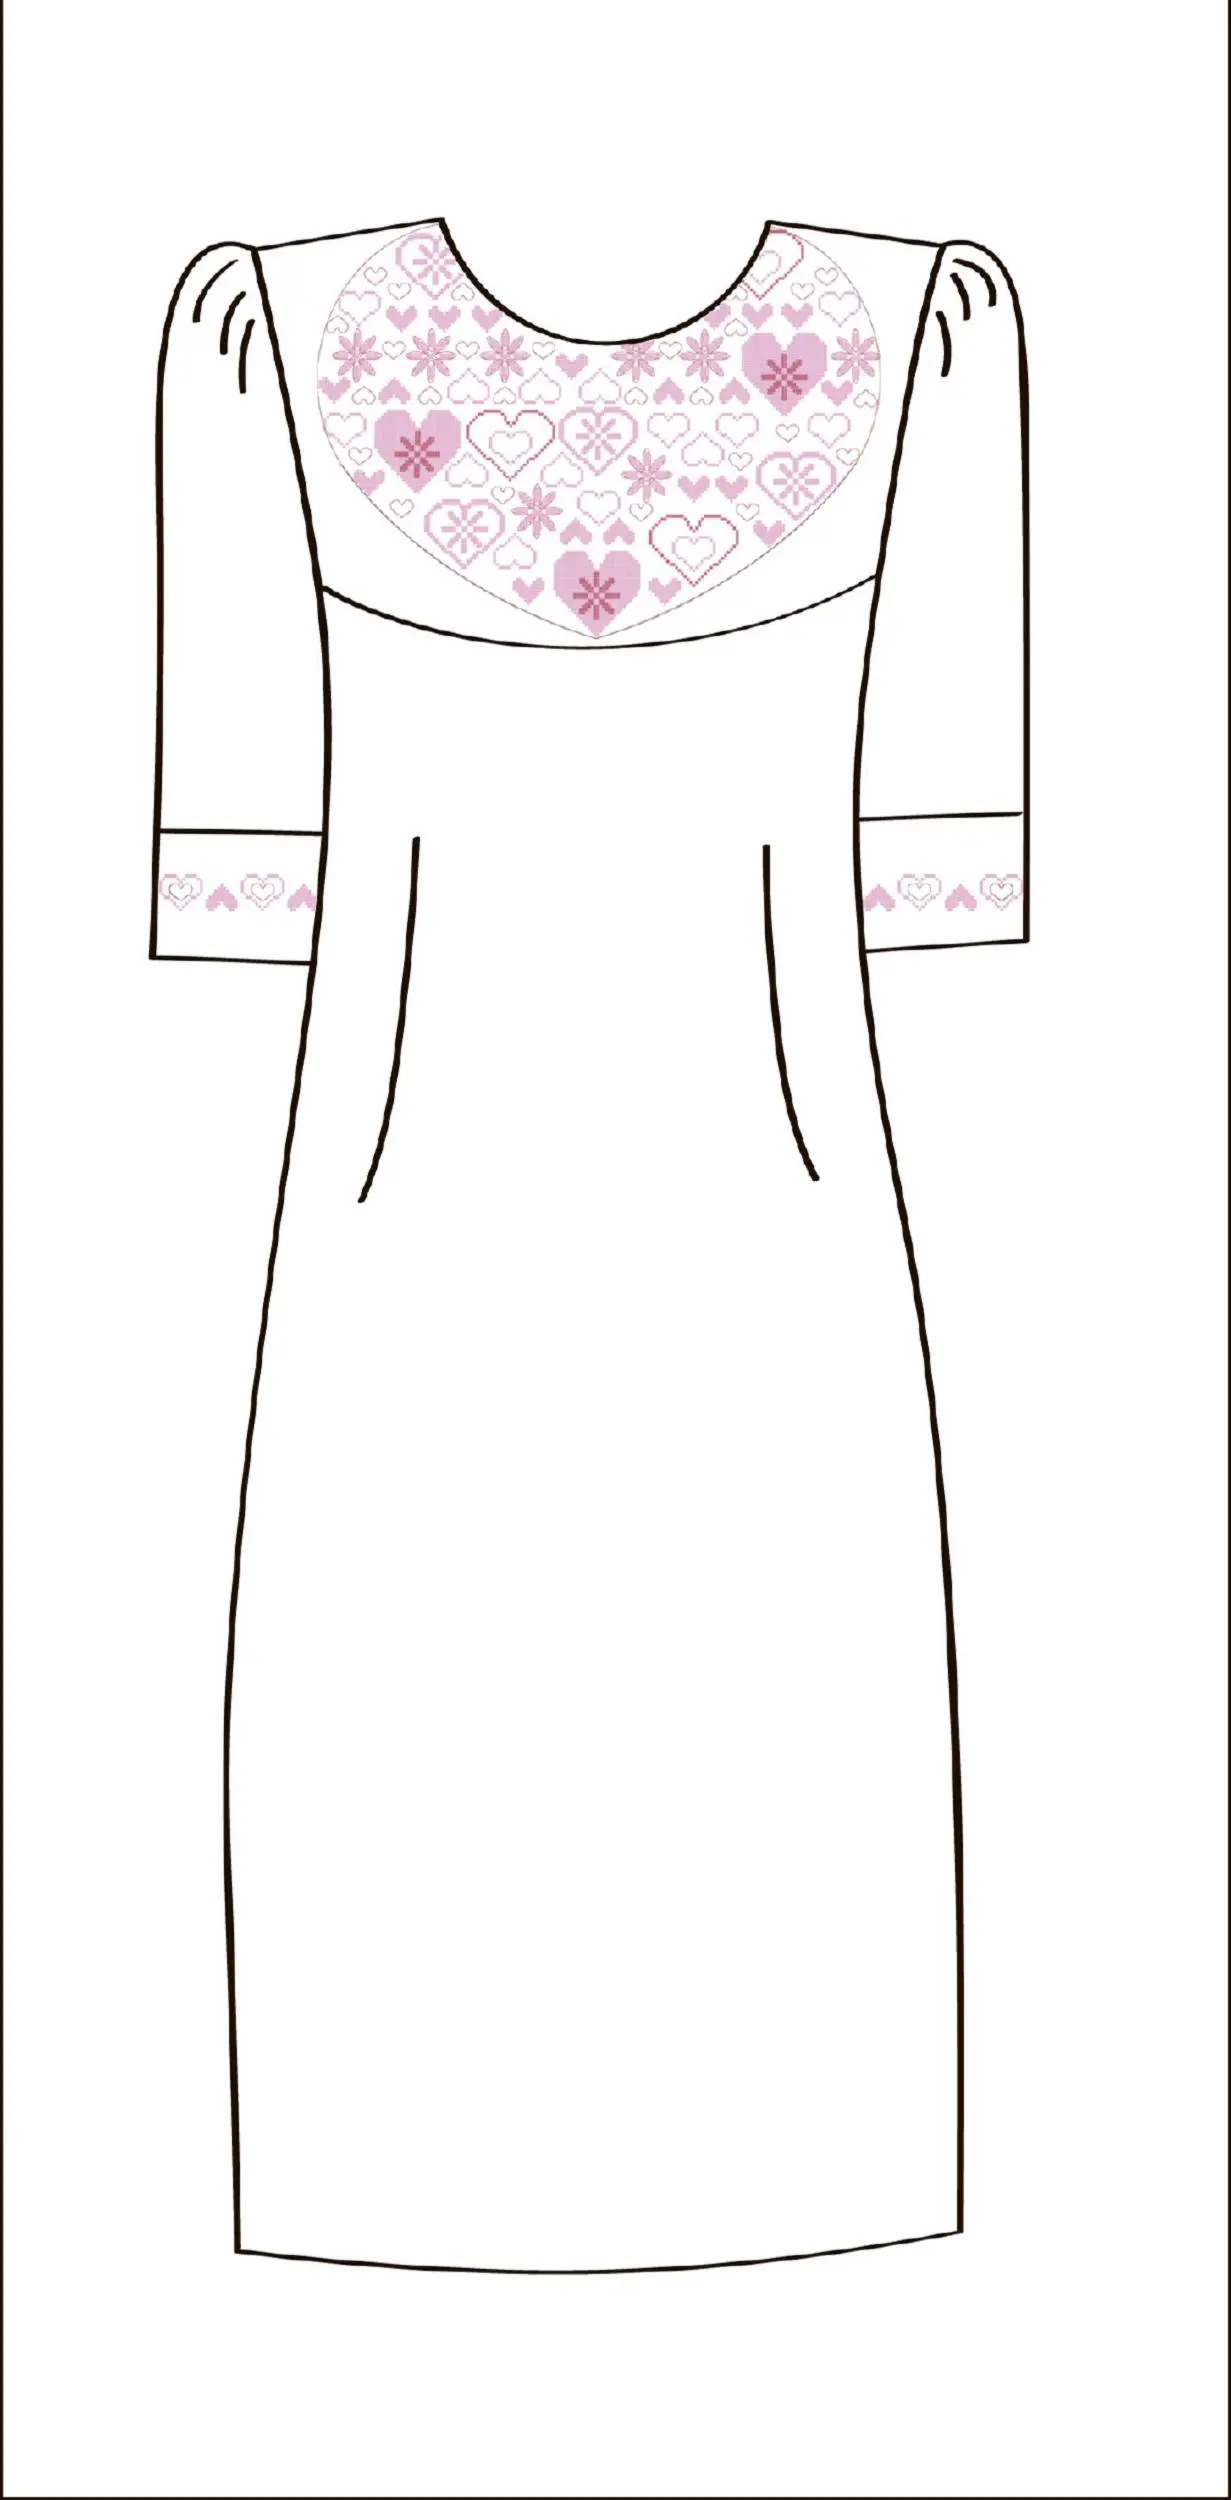 822-14/09 Плаття жіноче, біле, розмір 54